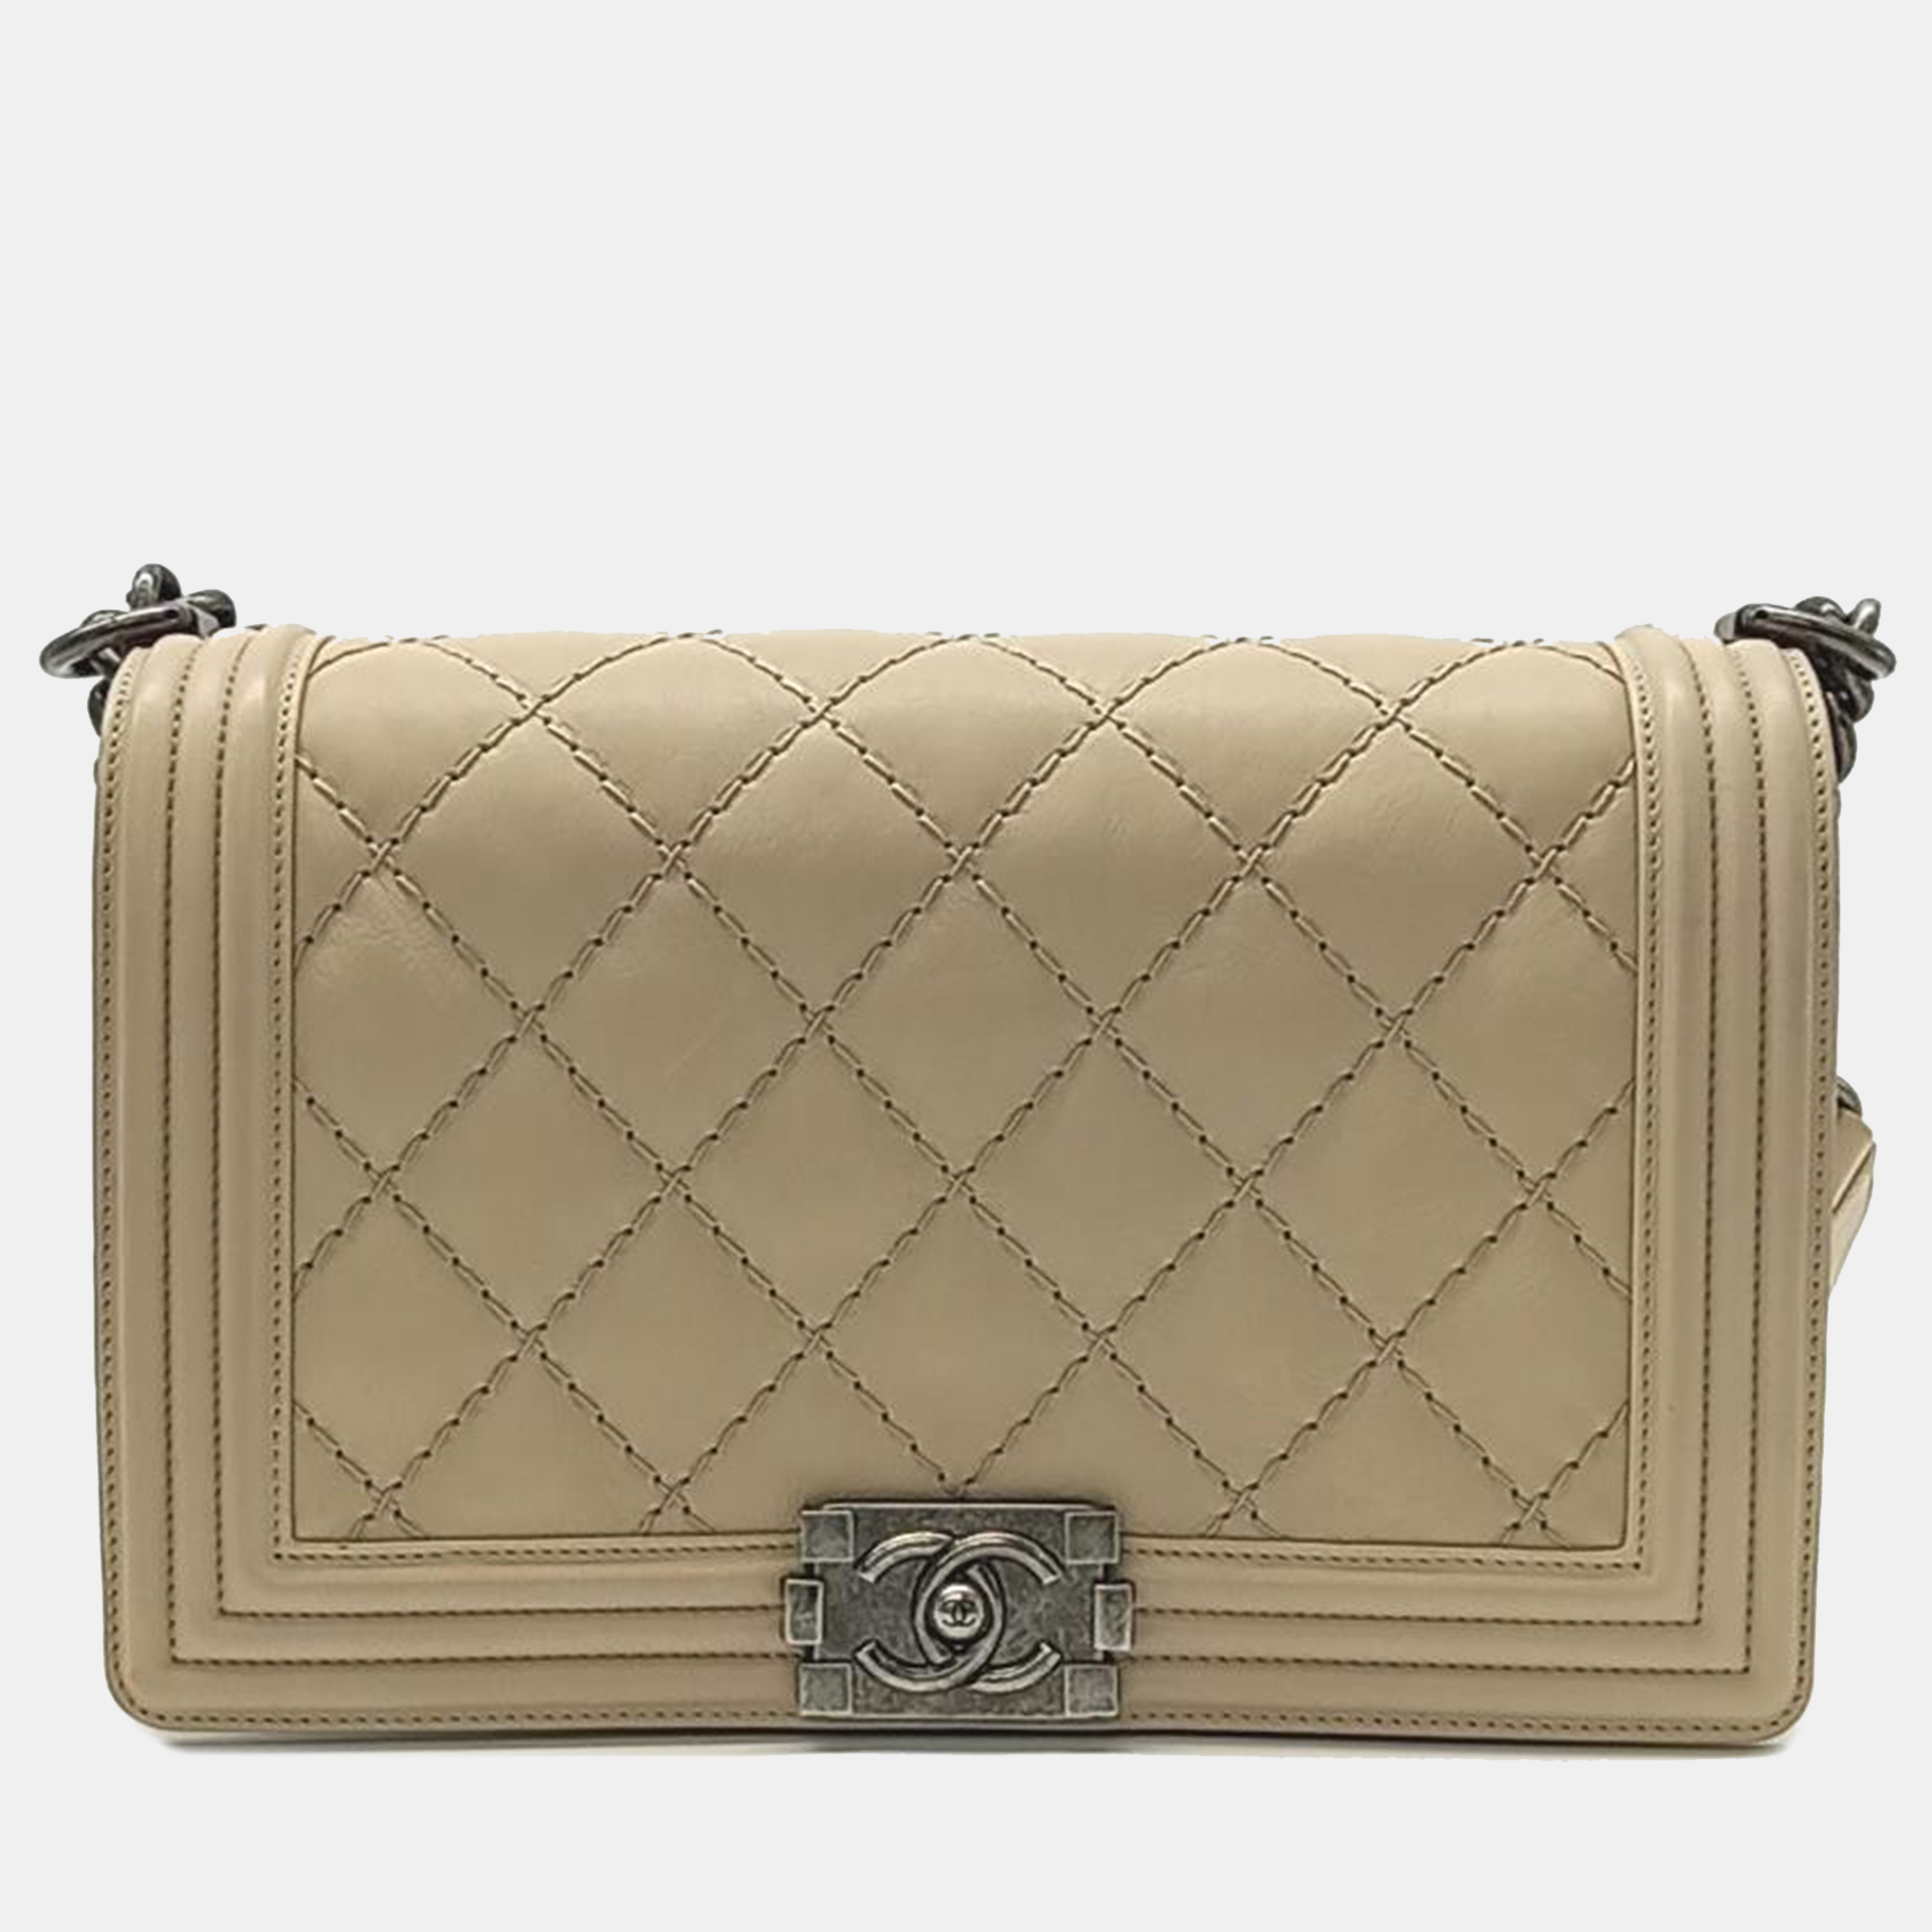 Chanel beige leather medium stitch boy bag